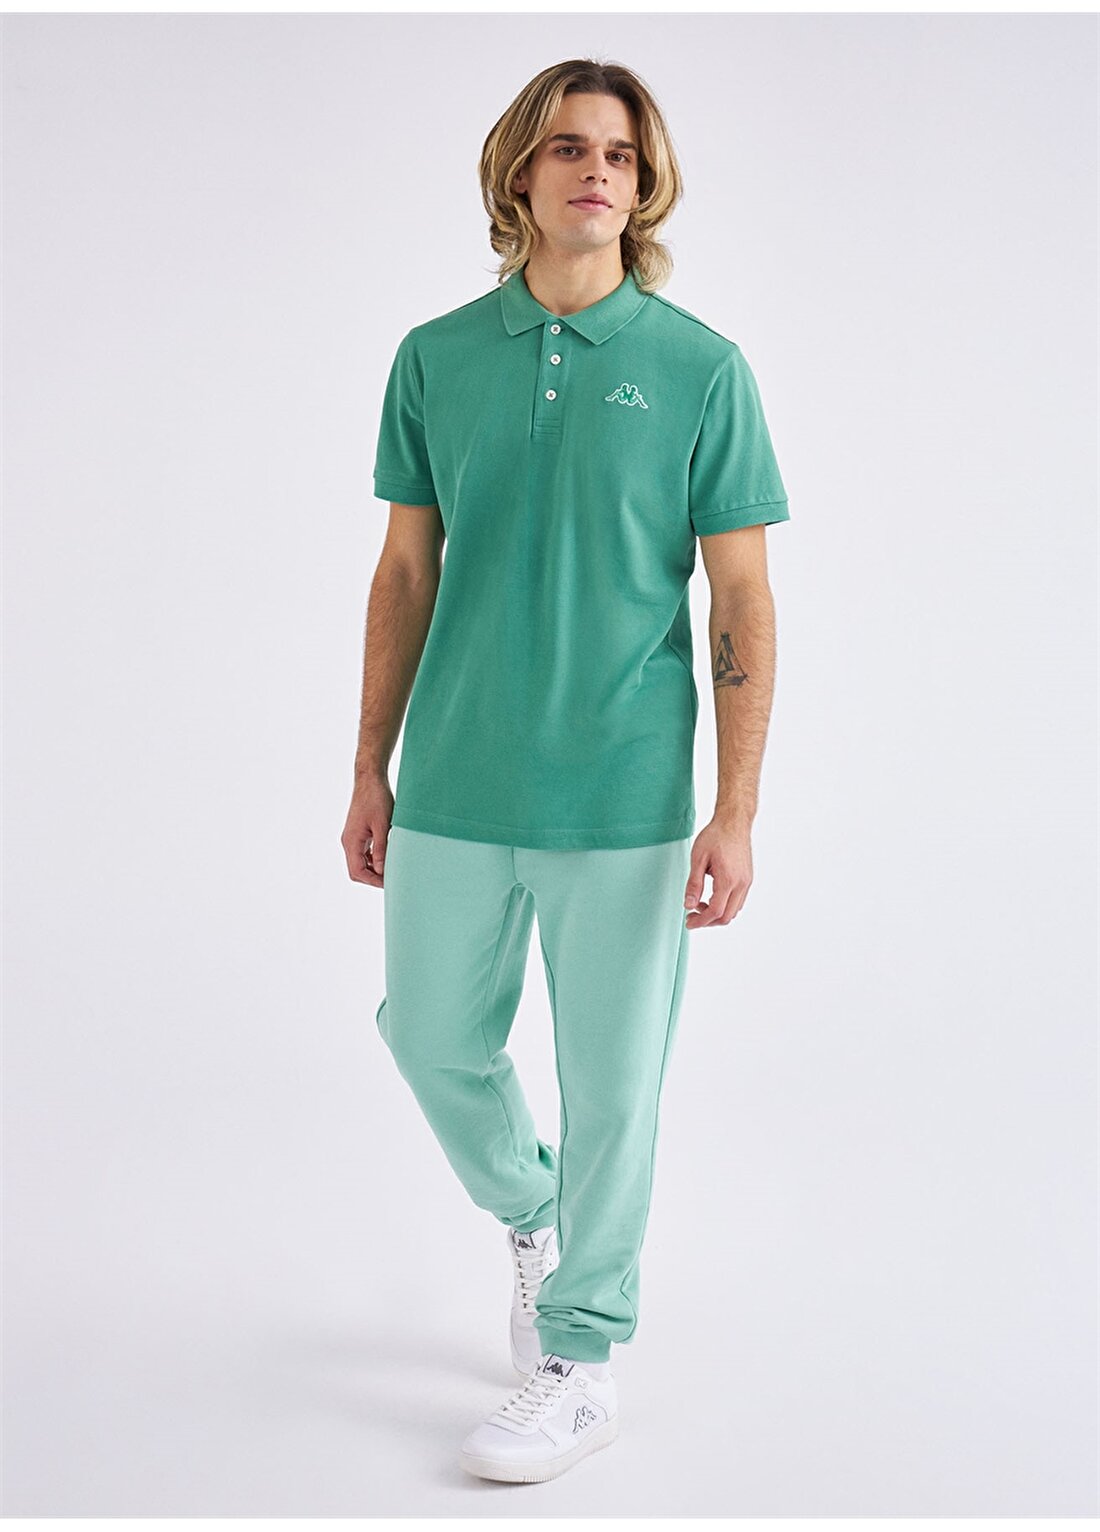 Kappa Düz Yeşil Erkek Polo T-Shirt 361D3EWD16 M LOGO MALTAX 2 MSS